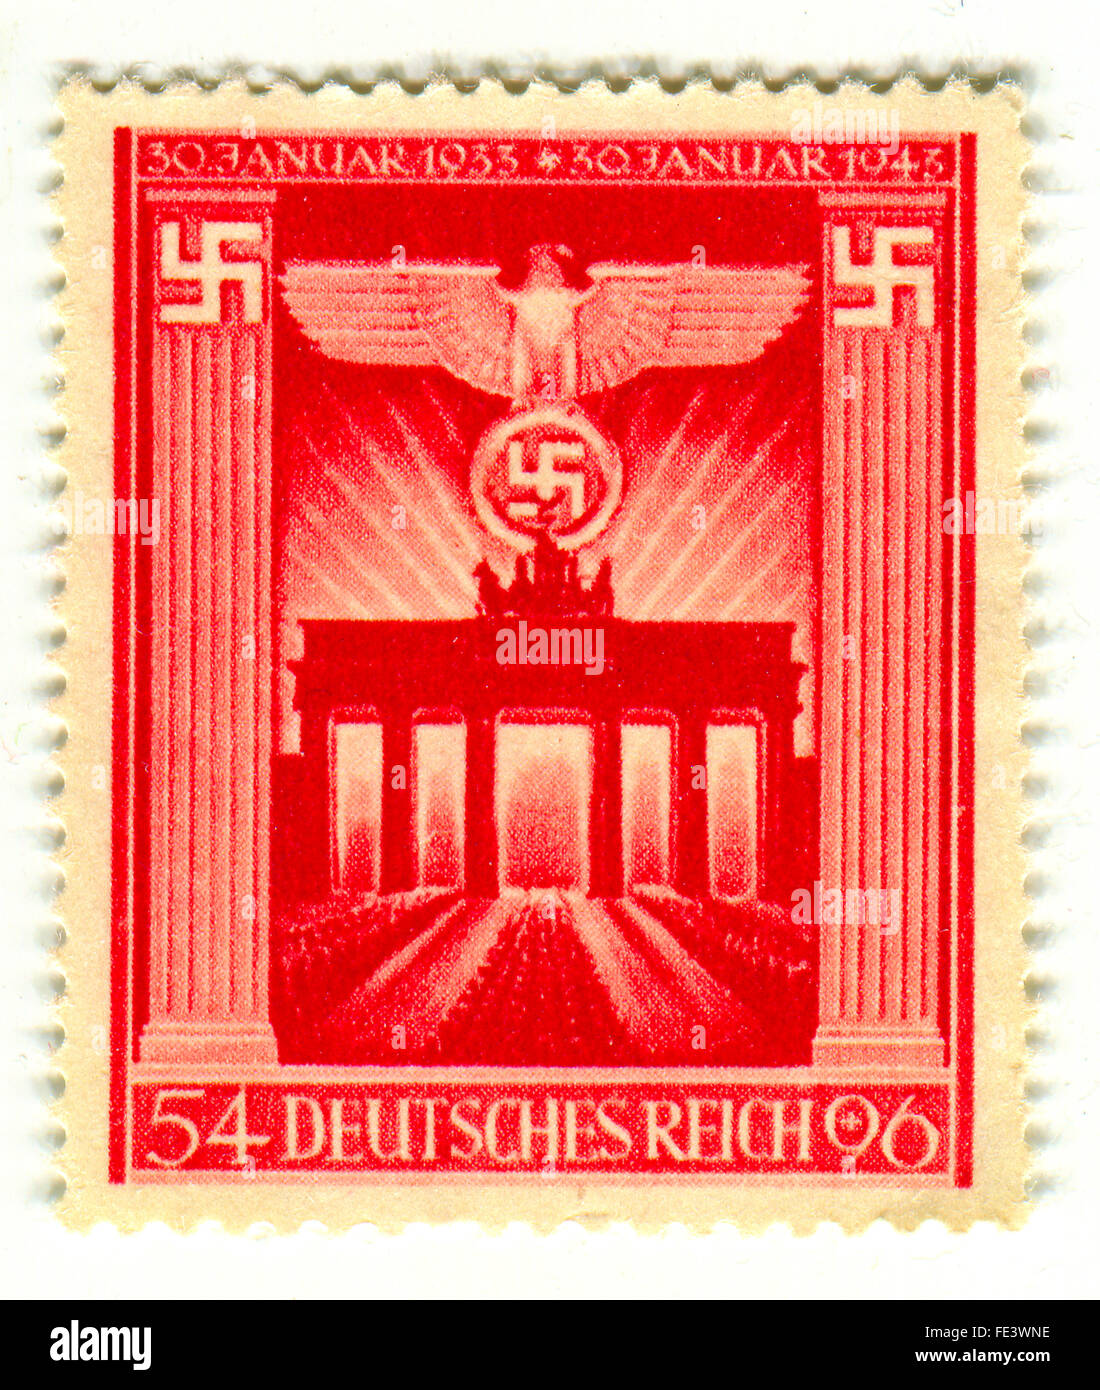 Un timbre imprimé en Allemagne montre image de l'anniversaire de l'Empire allemand, vers 1943. Banque D'Images